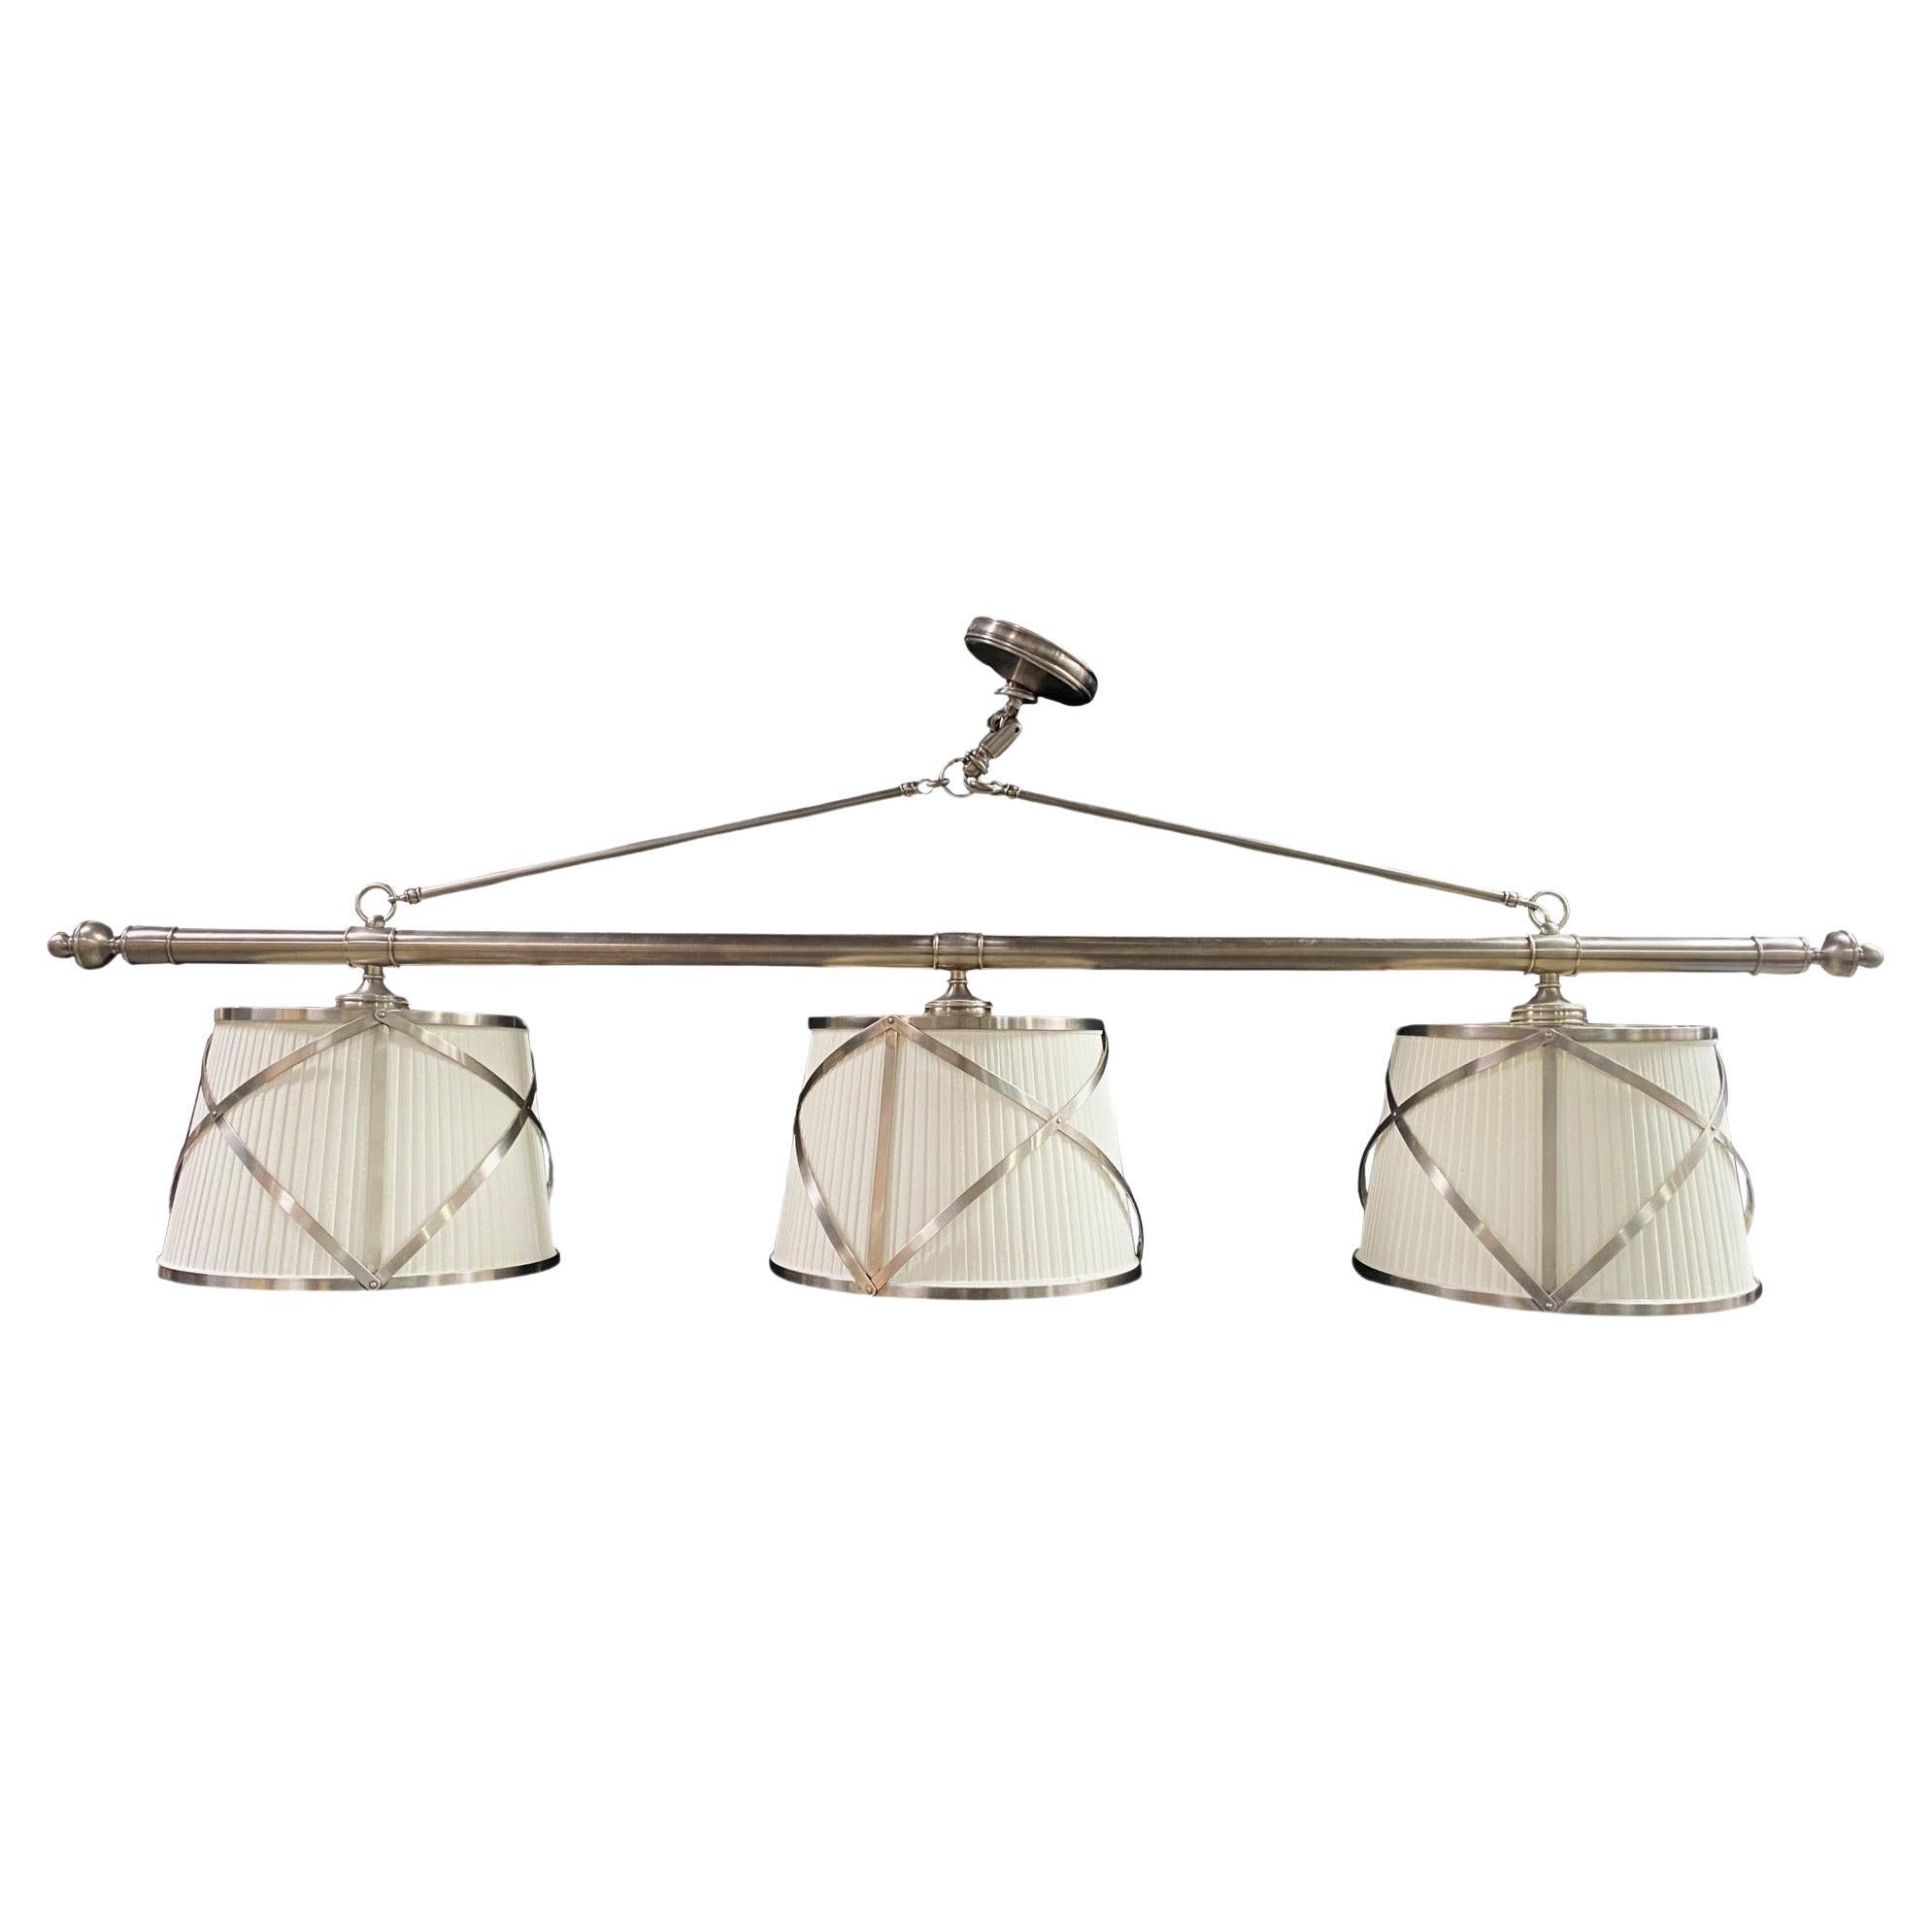 Mid-Century Modern Style Three Light Billiard, Kitchen or Dining Table Pendant